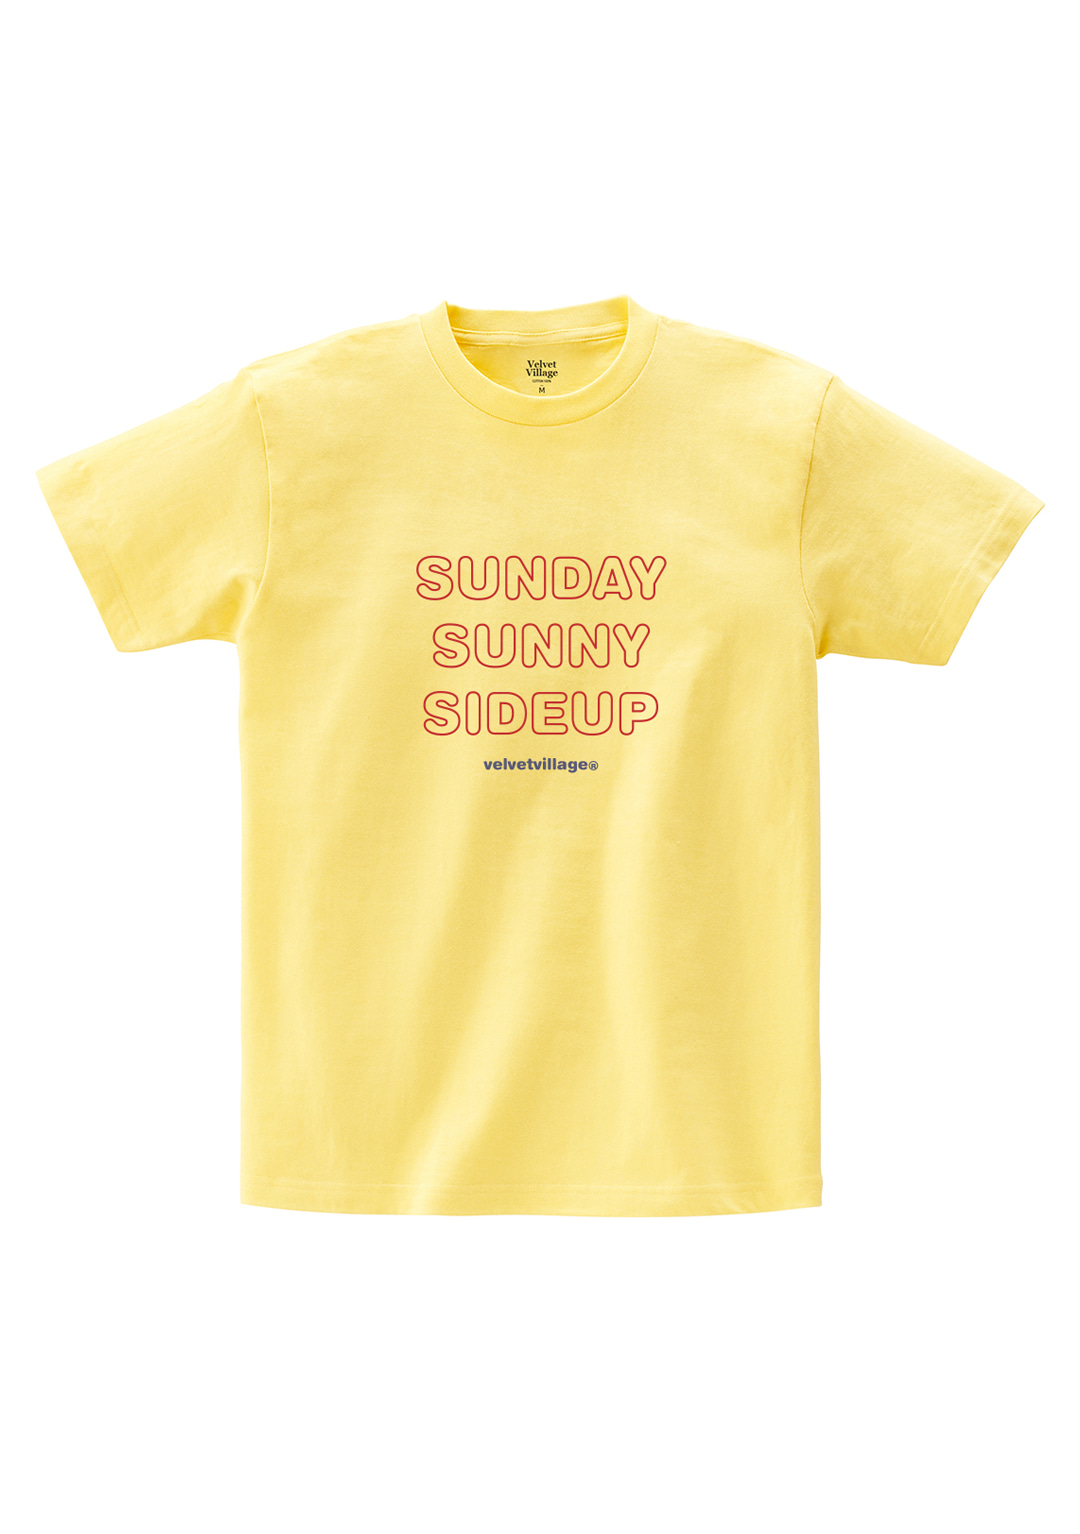 Sunnysideup T-shirt (Light Yellow)